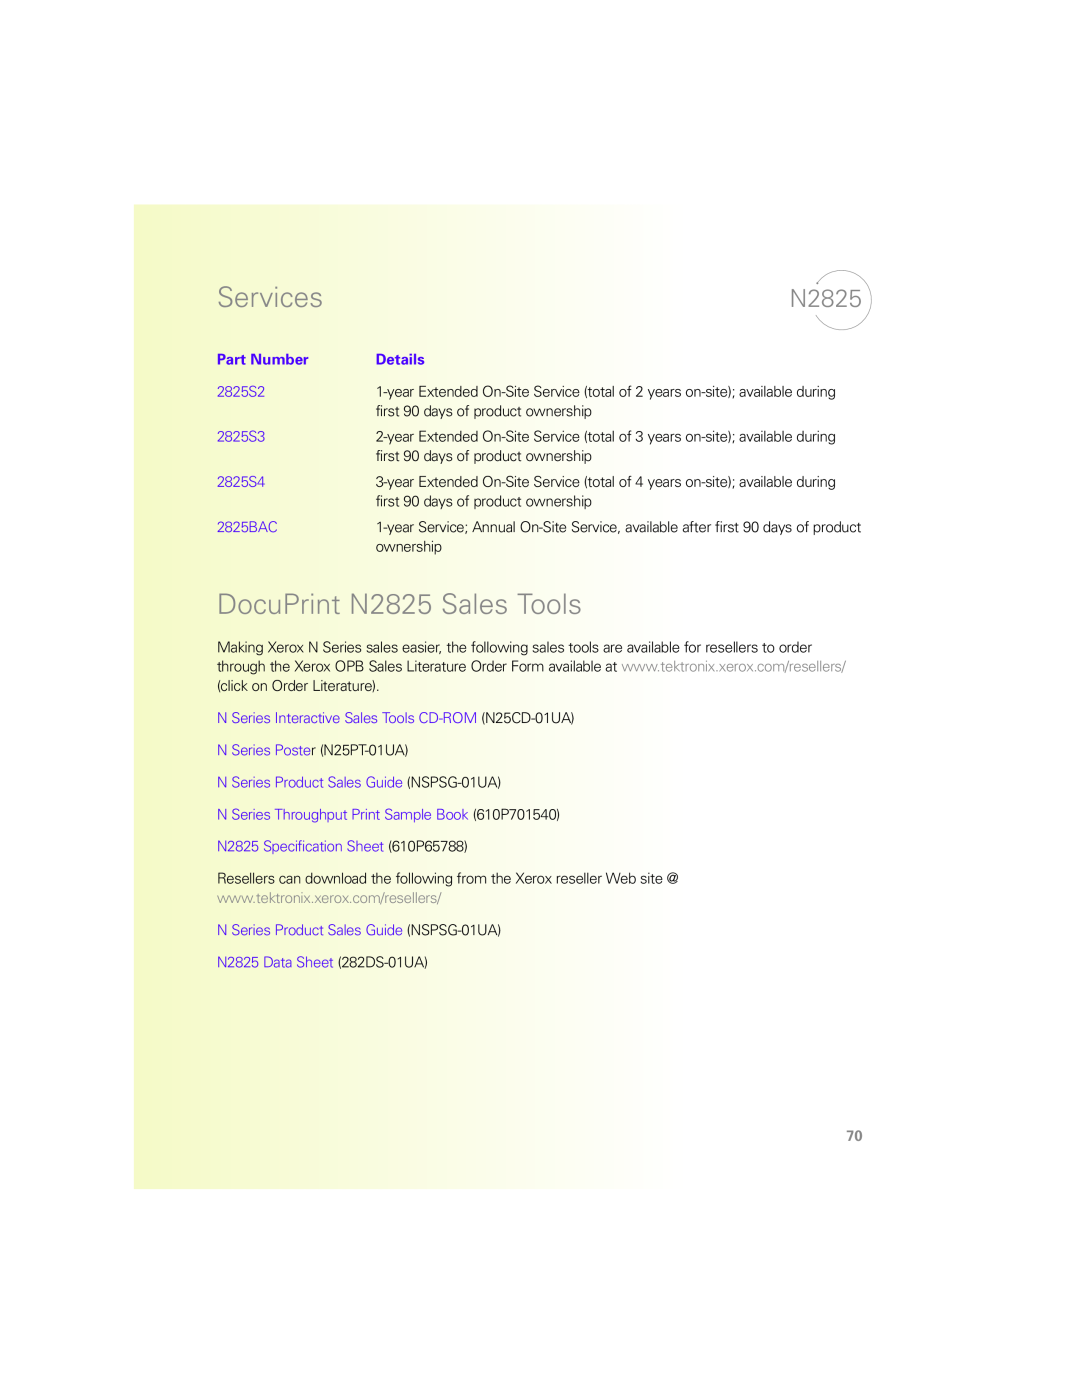 Xerox N Series manual DocuPrint N2825 Sales Tools, Services, Part Number, Details 